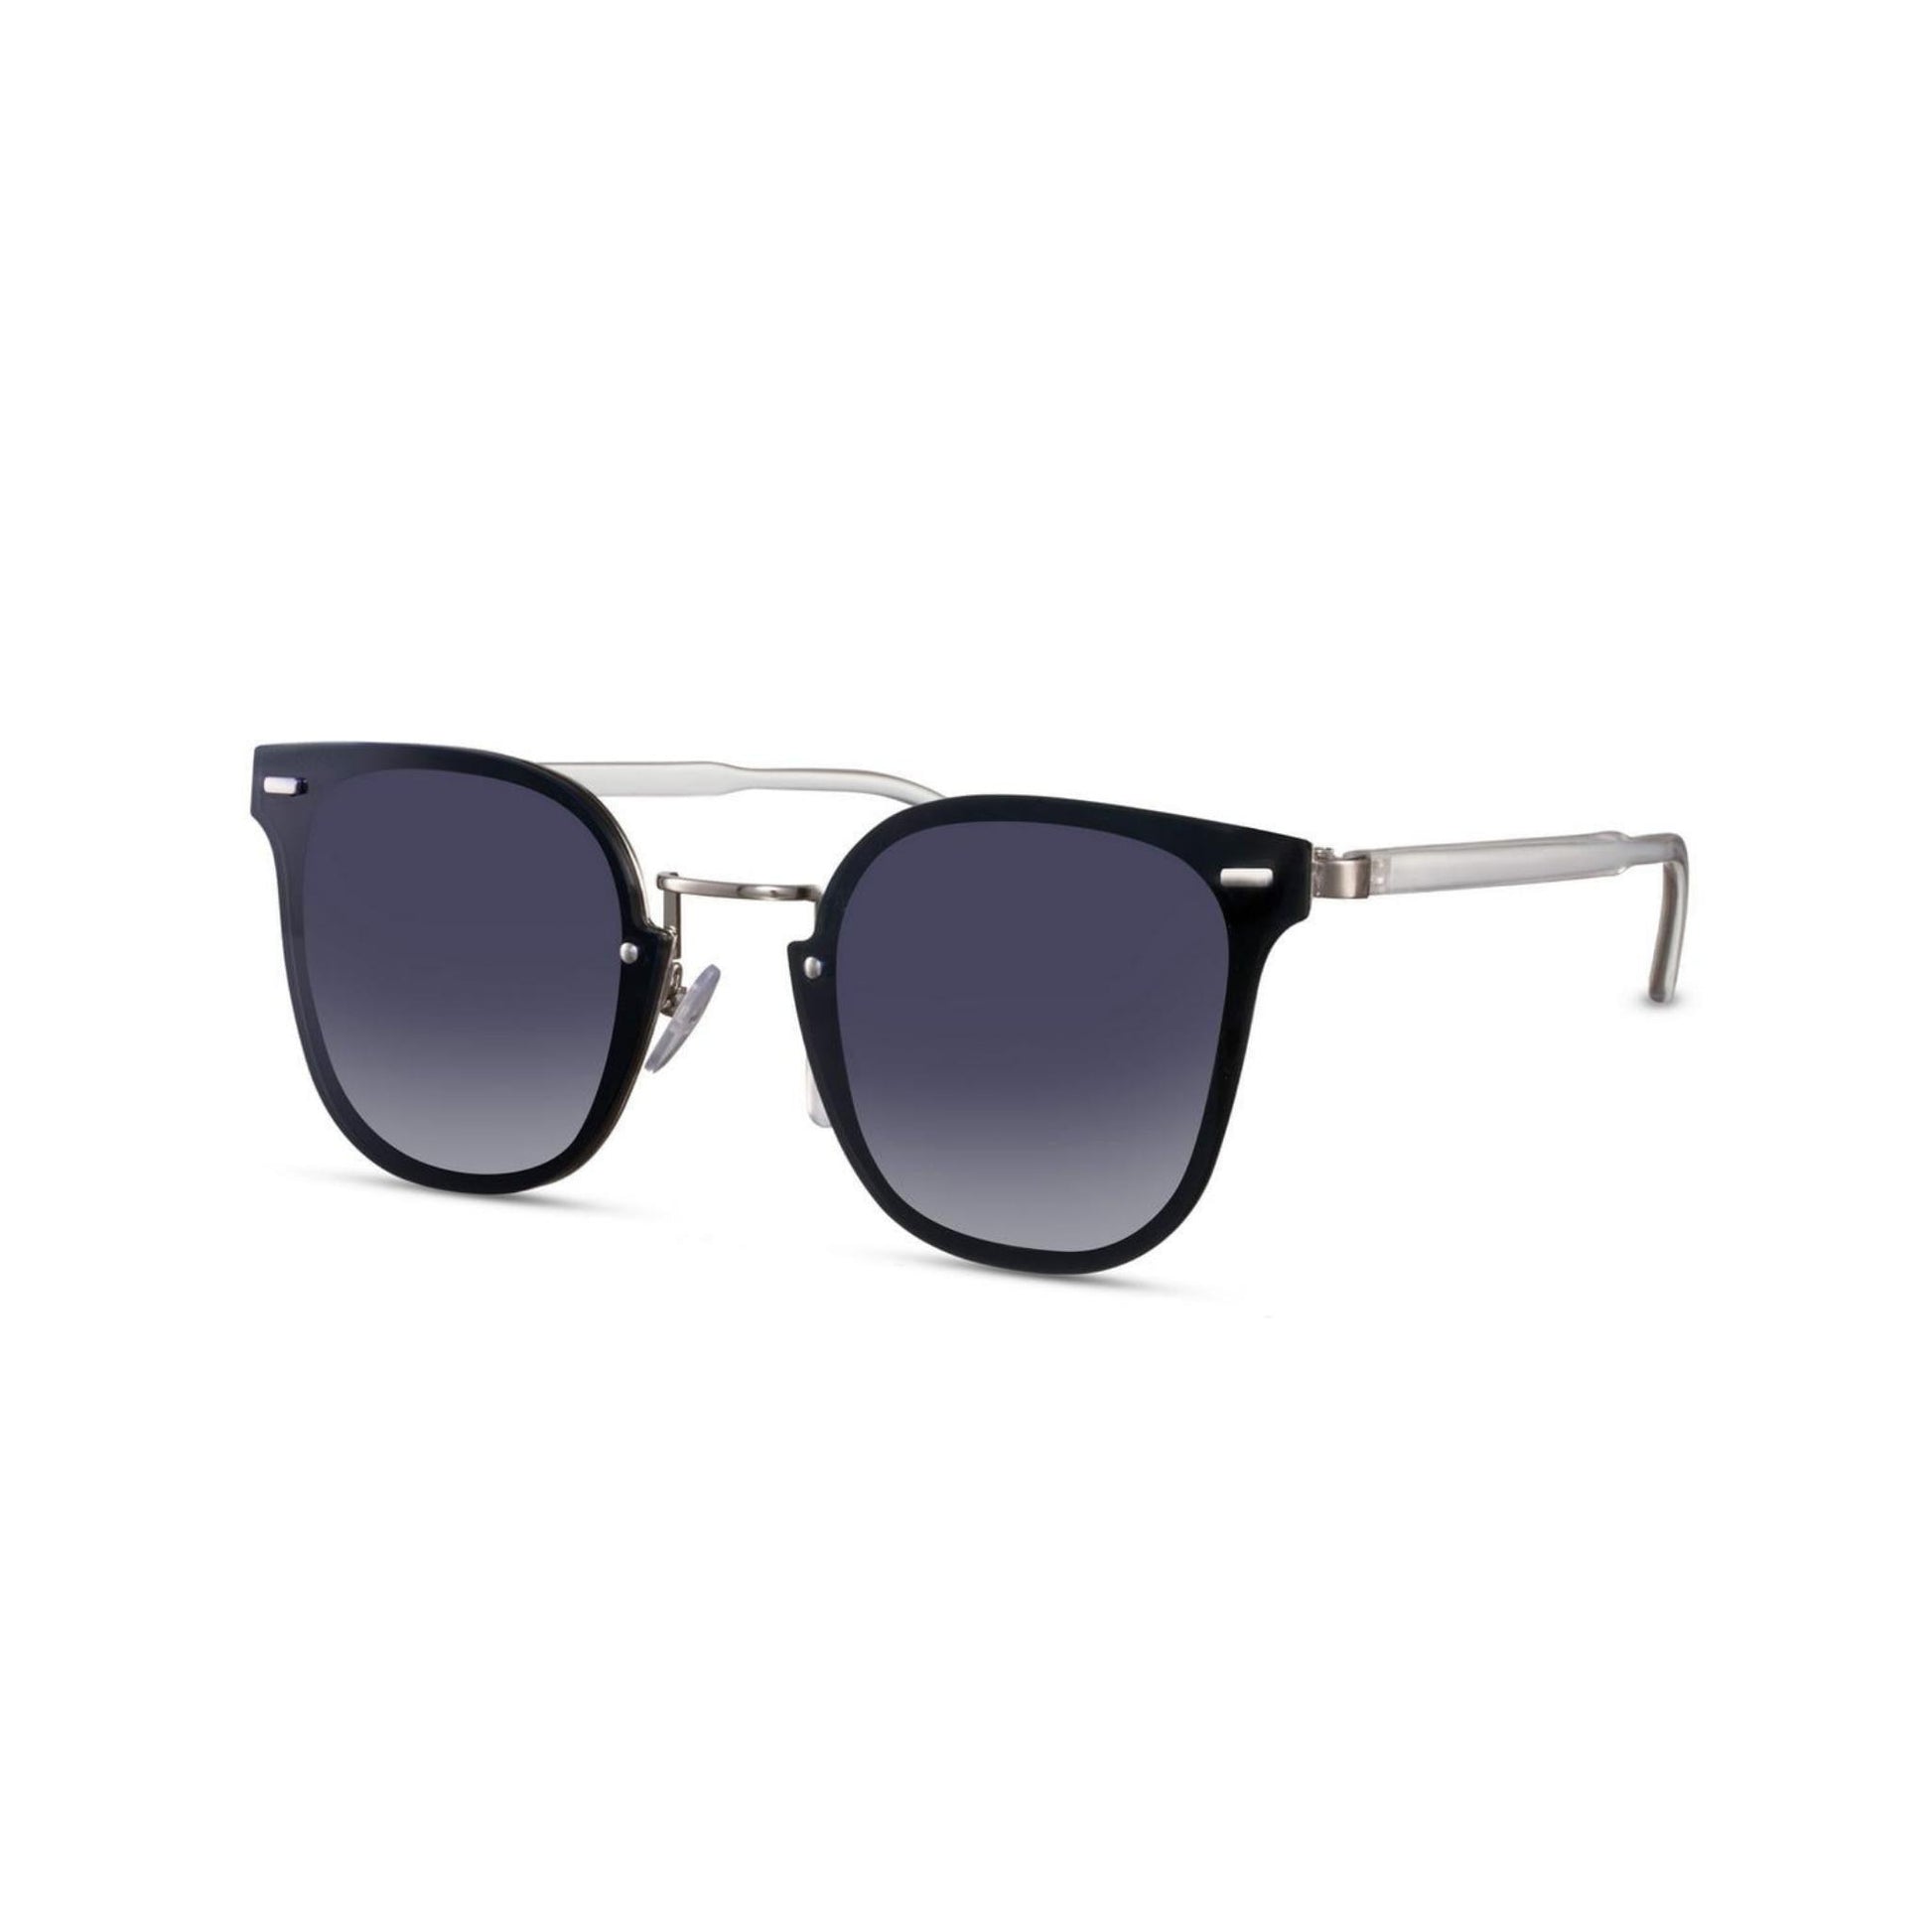 Ορθογώνια Γυαλιά ηλίου Kaly της Exposure Sunglasses με προστασία UV400 σε ασημί χρώμα σκελετού και μαύρο φακό. Πλάγια προβολή